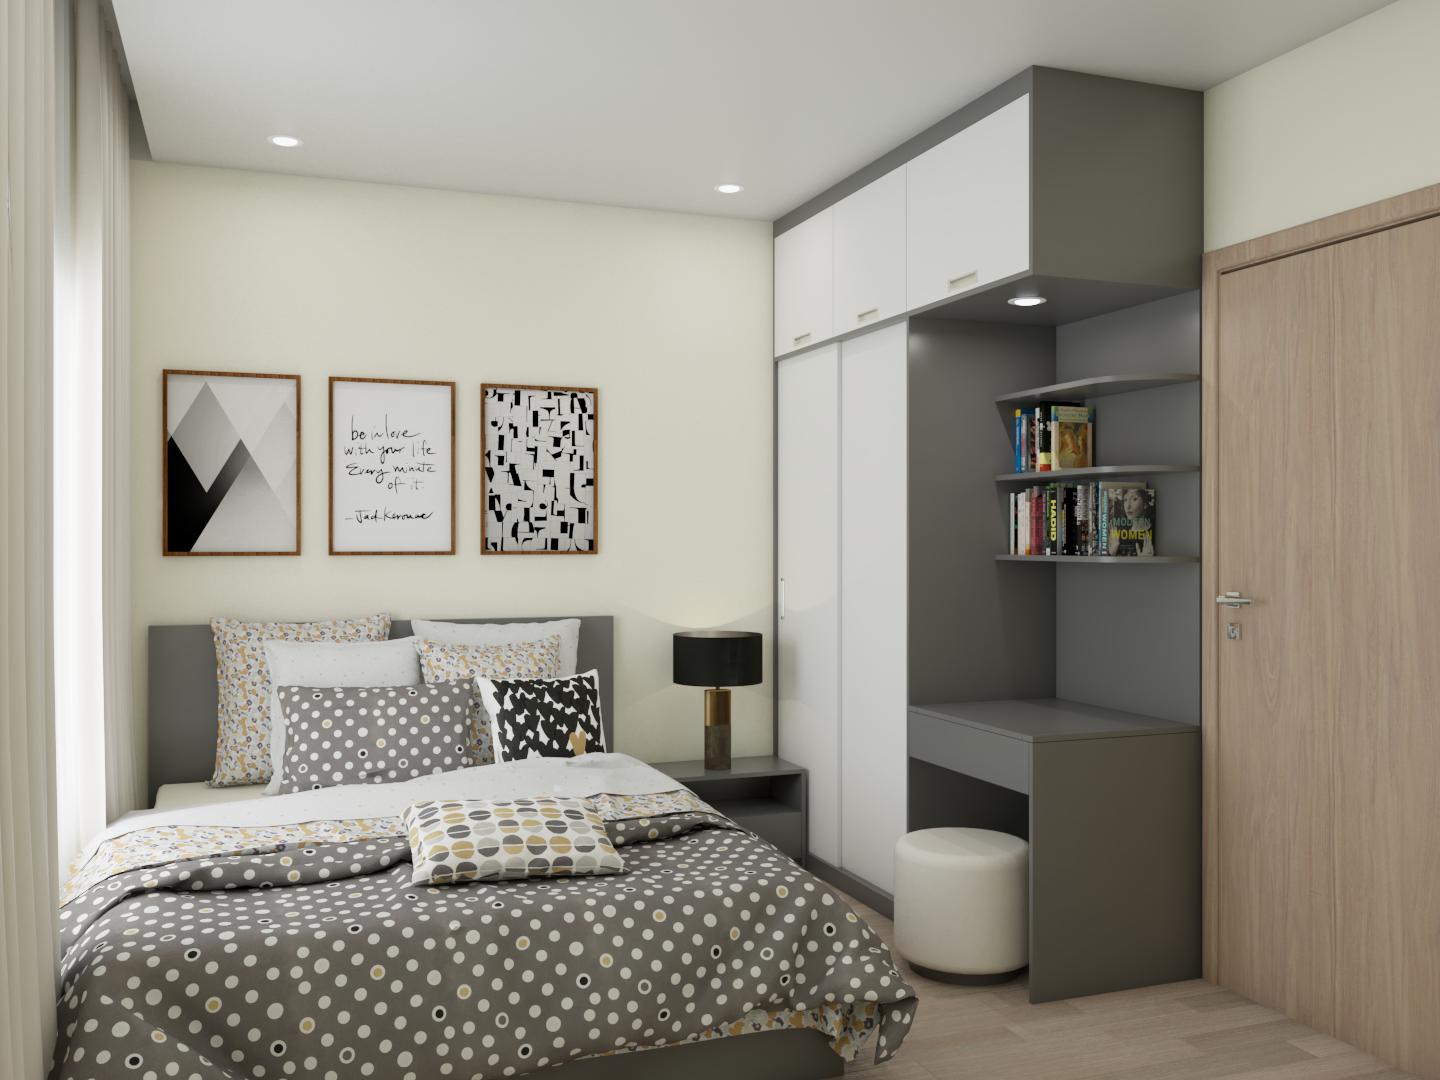 Với diện tích phòng ngủ nhỏ, bạn có thể sử dụng những ý tưởng thiết kế để tối đa hoá không gian. Từ bố cục nội thất thông minh đến sự sáng tạo trong việc lựa chọn tài liệu, bạn có thể tạo ra một không gian nghỉ ngơi vừa đủ chức năng, ngăn nắp và tiện nghi. Hãy xem hình ảnh để cùng khám phá thêm chi tiết!